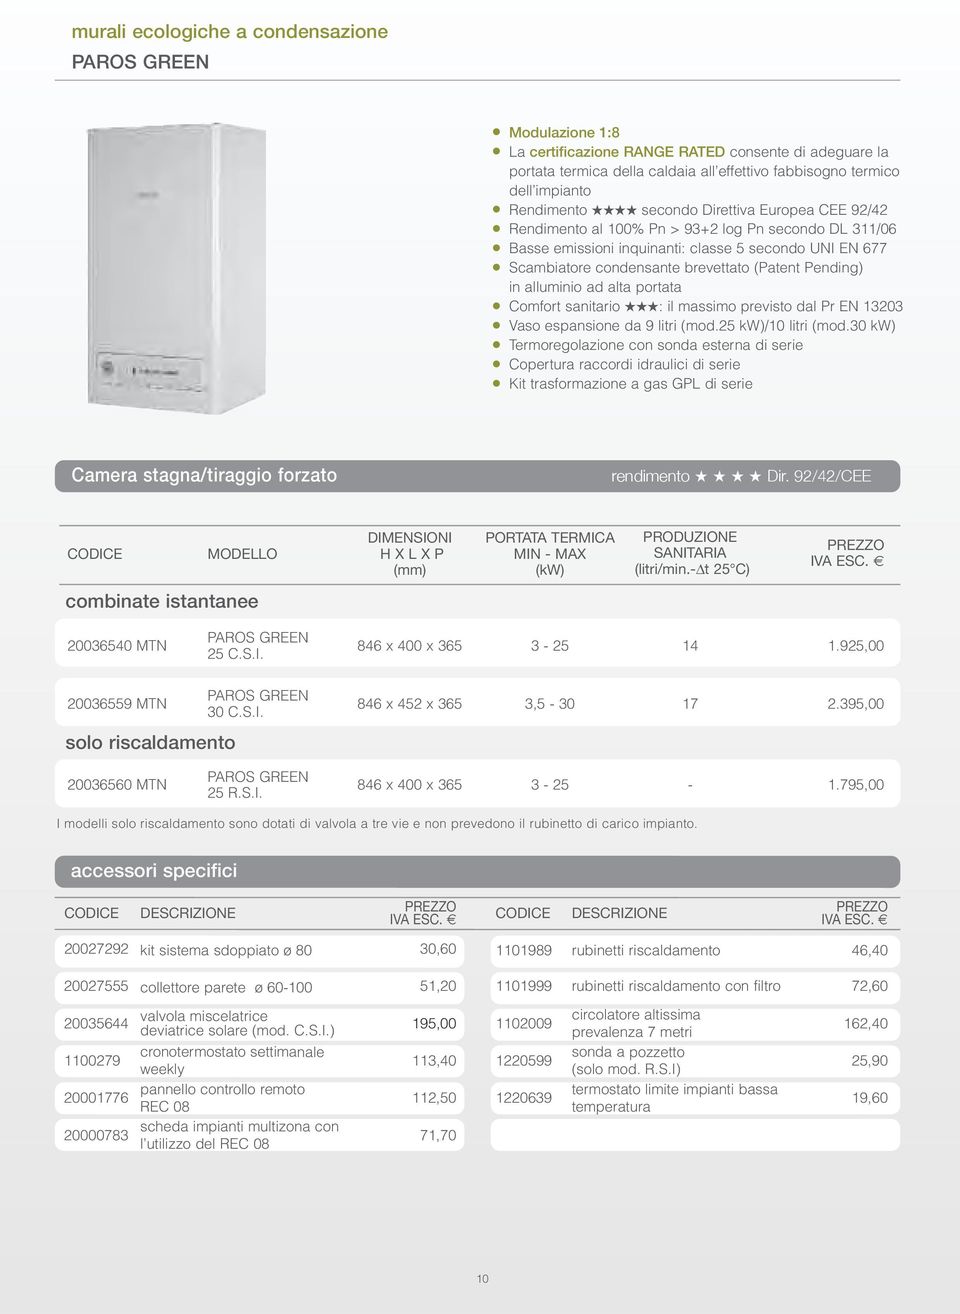 Pending) in alluminio ad alta portata Comfort sanitario : il massimo previsto dal Pr EN 13203 Vaso espansione da 9 litri (mod.25 kw)/10 litri (mod.